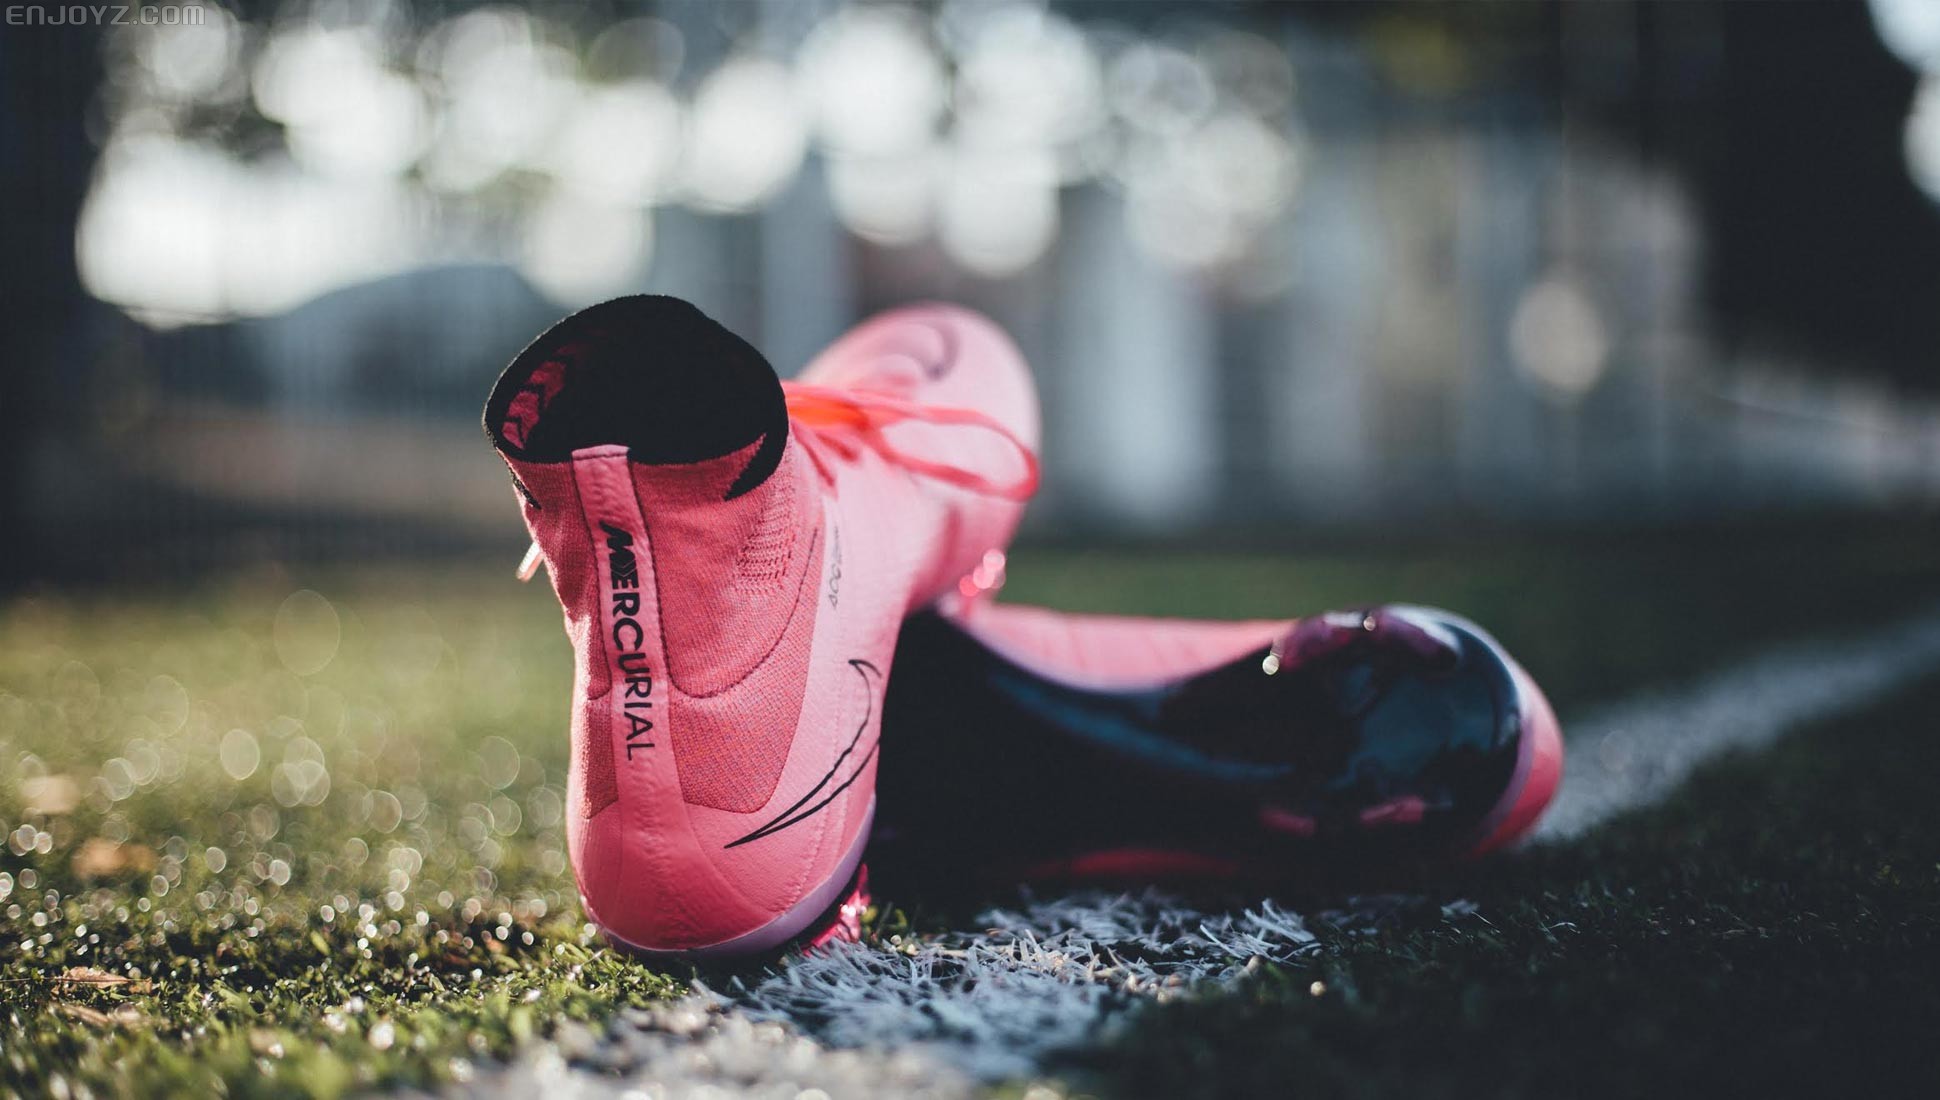 Alex Penfornis的耐克“雷暴”足球鞋摄影作品